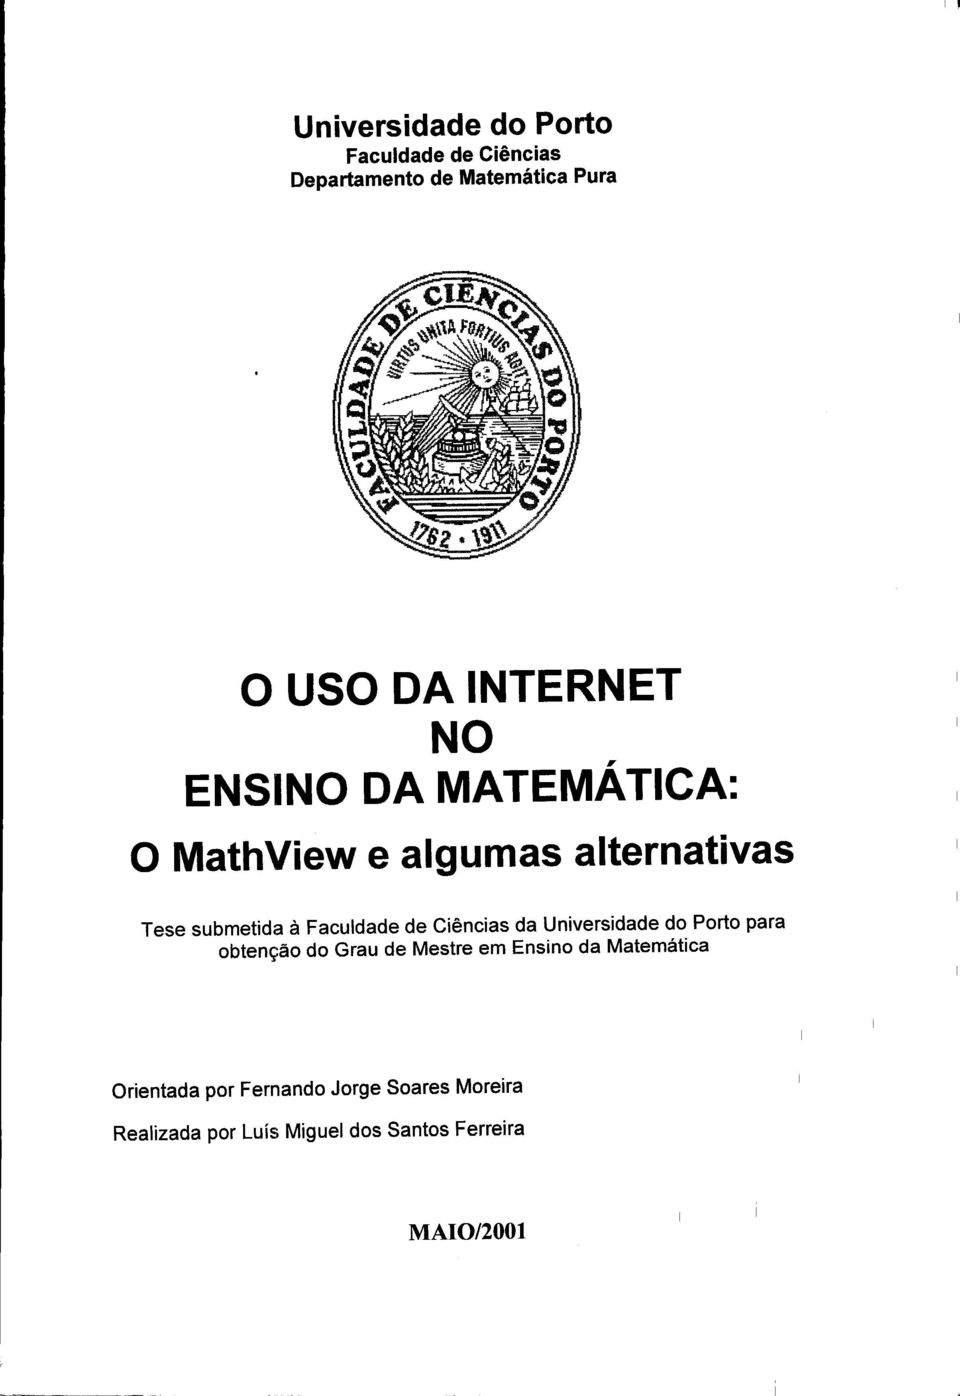 Faculdade de Ciências da Universidade do Porto para obtenção do Grau de Mestre em Ensino da